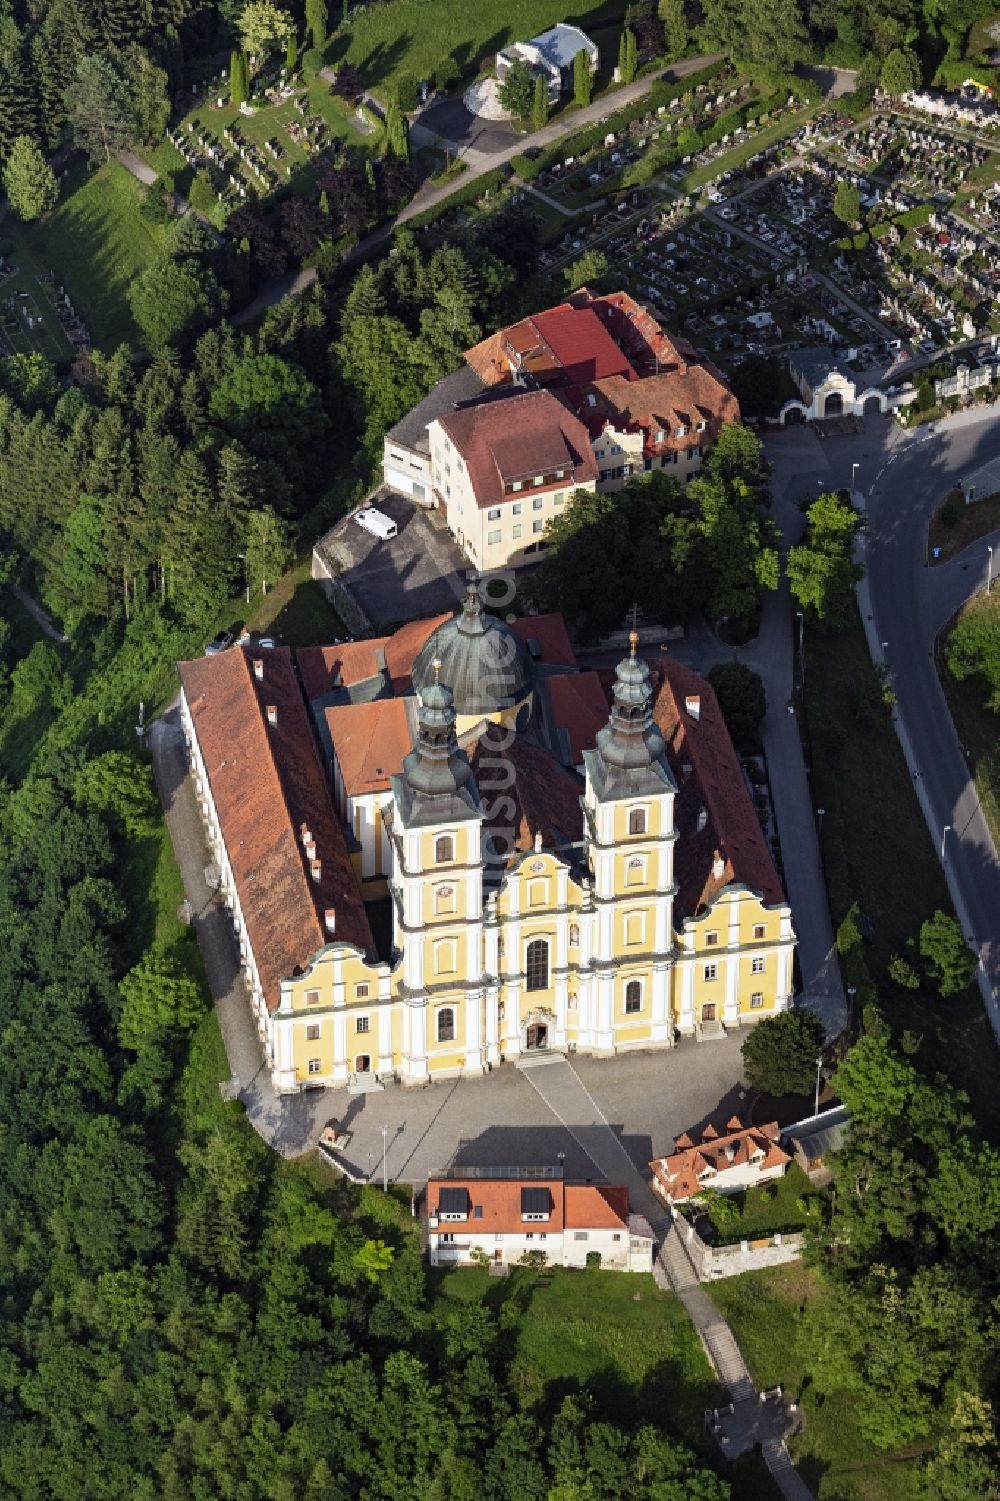 Luftbild Graz - Kirchengebäude der Wallfahrtskirche Basilika Mariatrost in Graz in Steiermark, Österreich